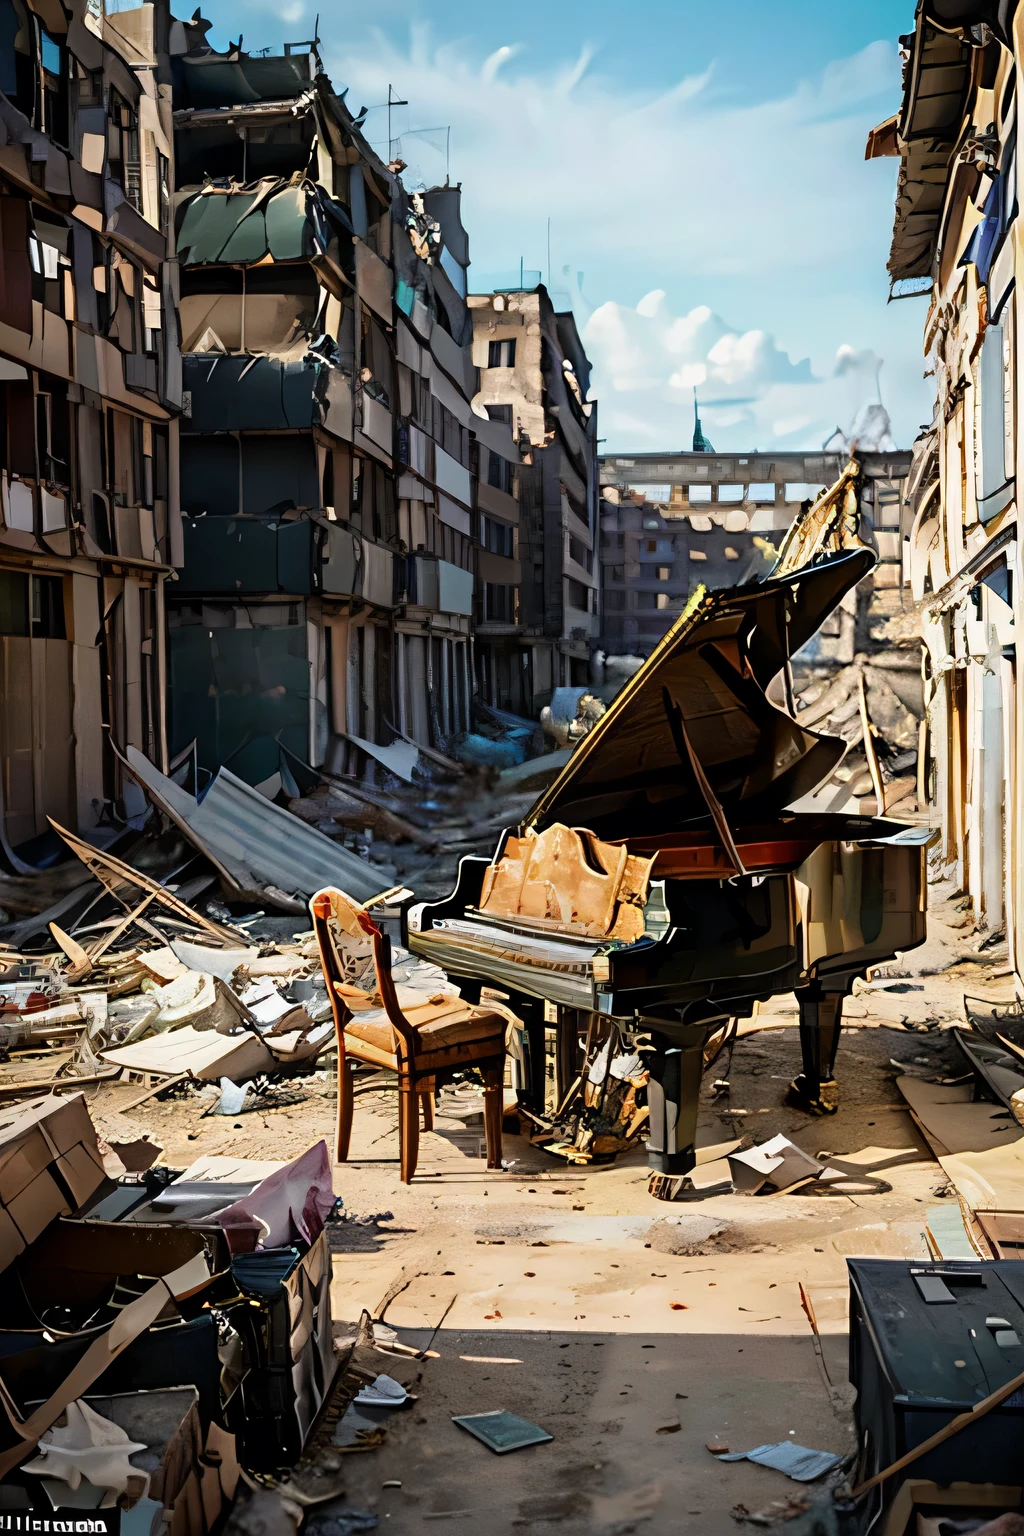 No meio da devastação de Berlim devastada pela guerra, havia um piano de cauda, milagrosamente intocado em meio aos escombros. Este piano pertenceu a um renomado pianista que fugiu da cidade no início da guerra., deixando para trás seu amado instrumento.